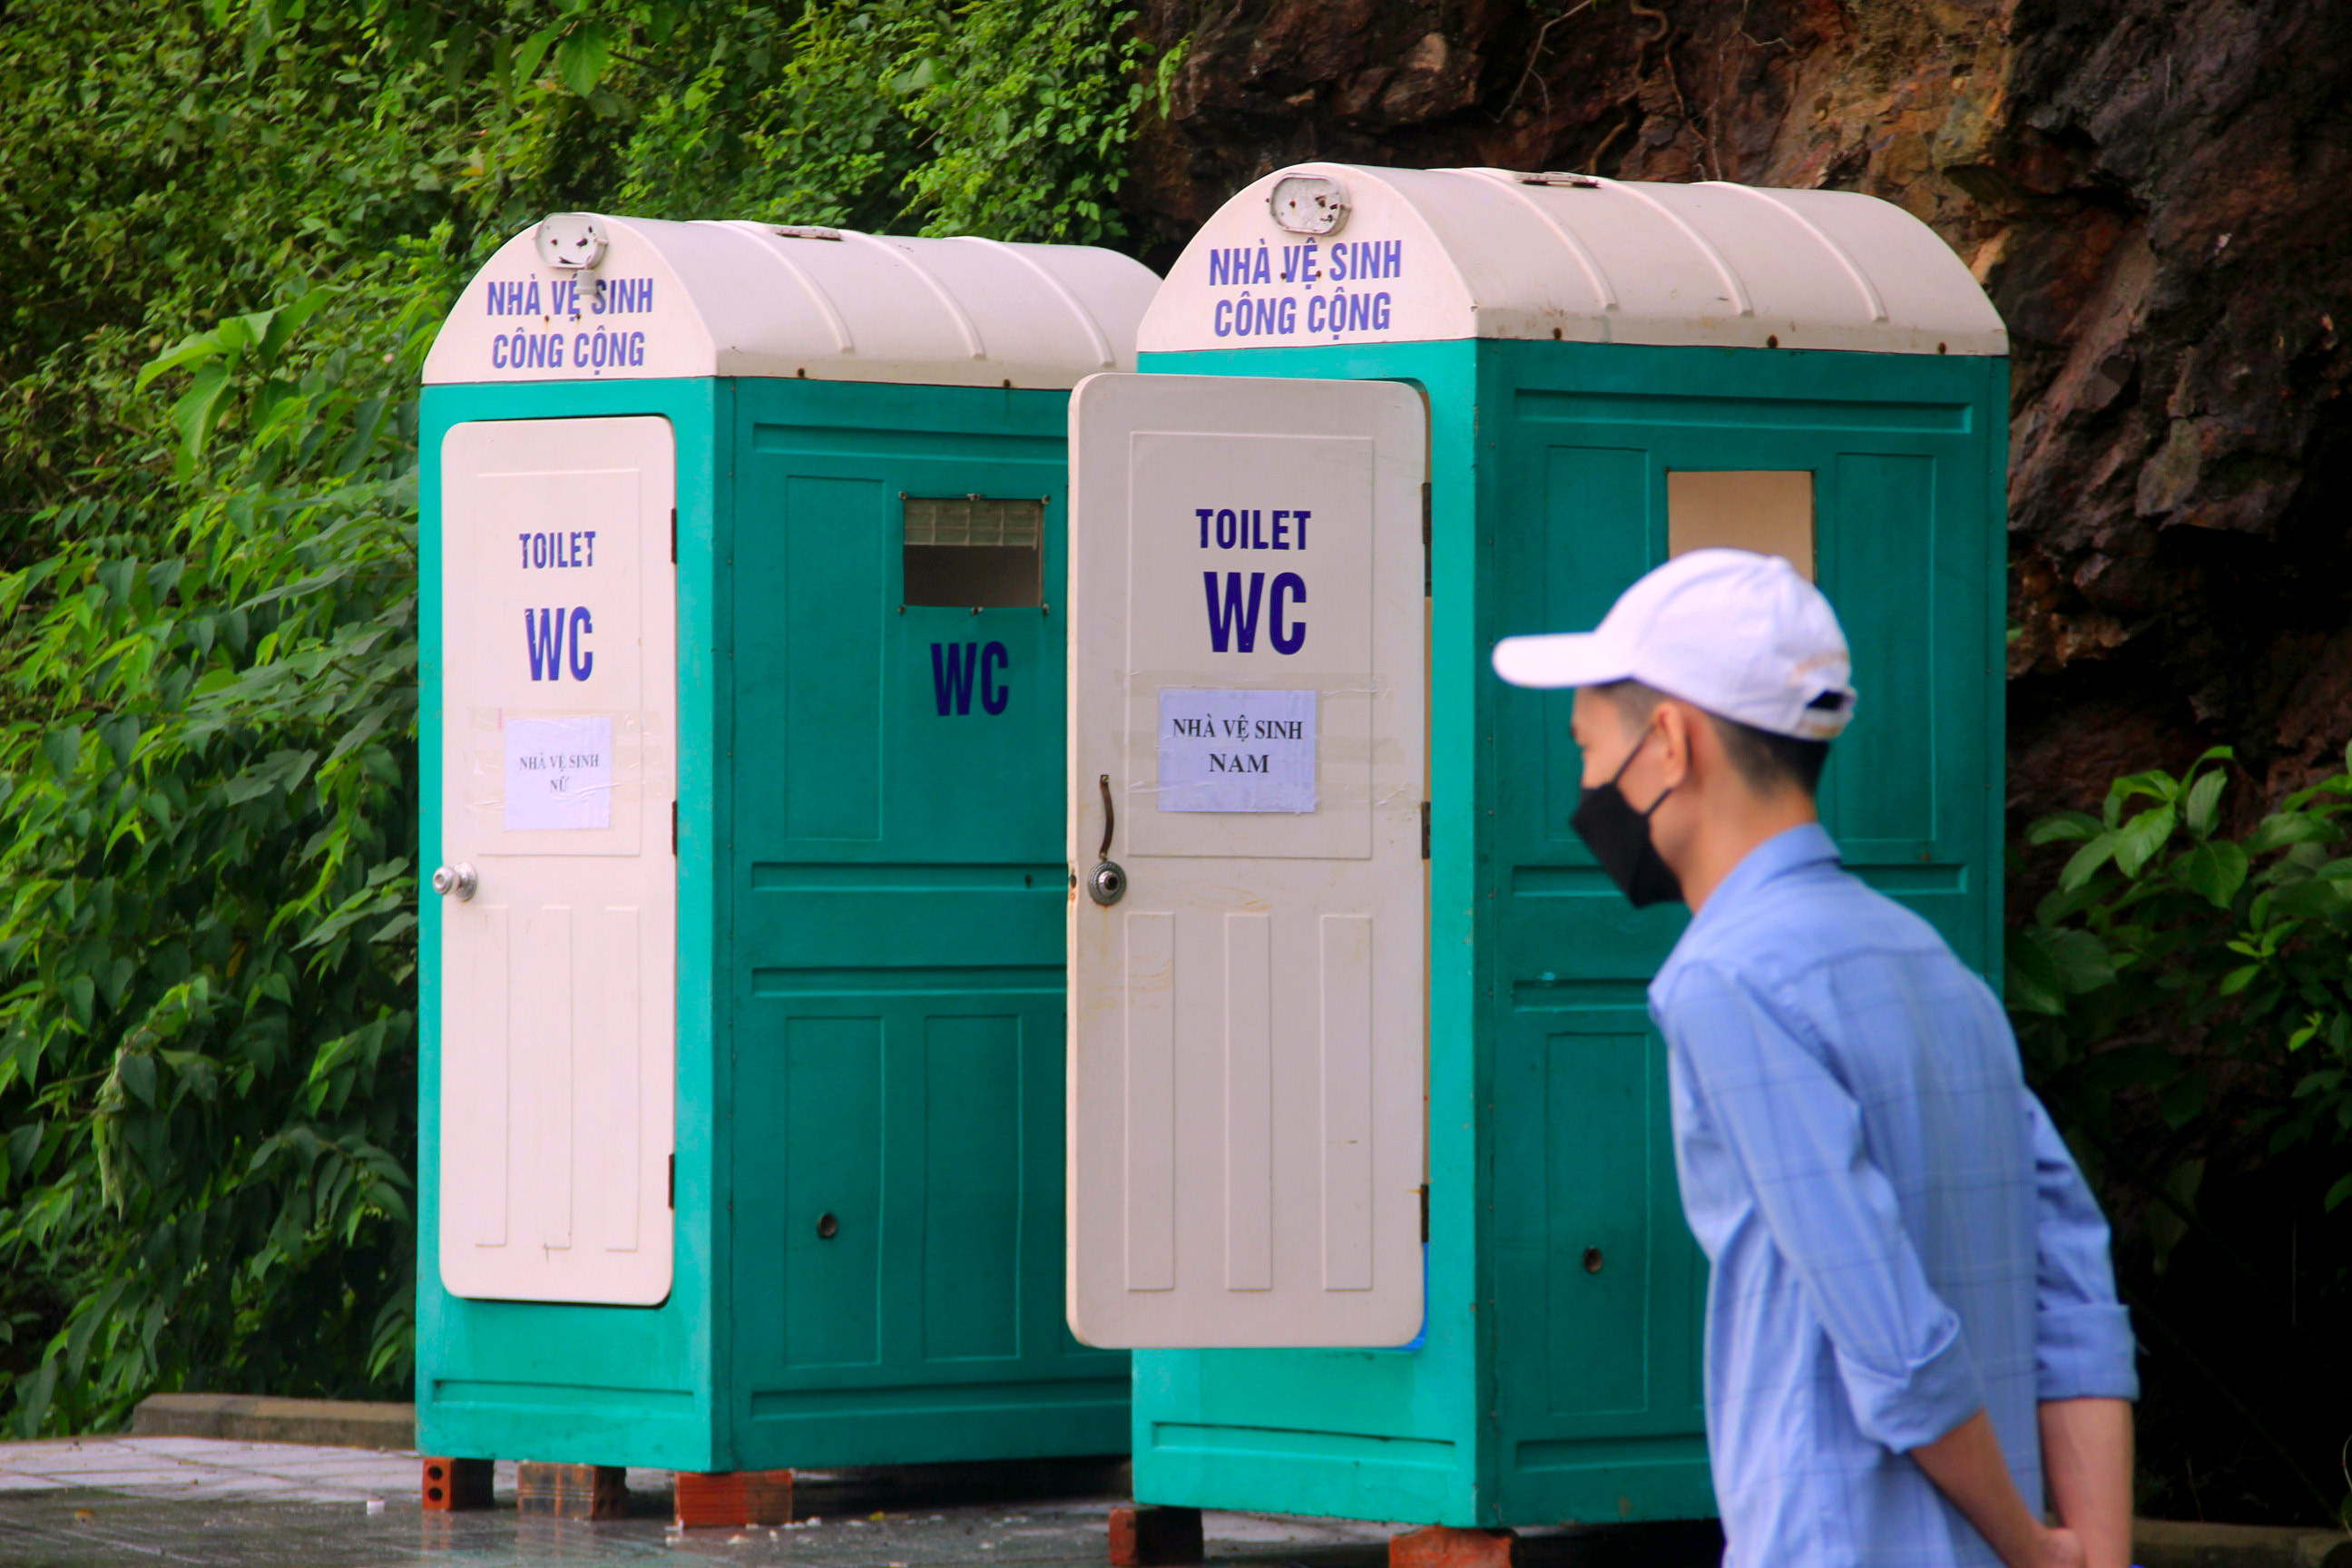 Nhà vệ sinh công cộng cũng đã được lắp đặt để phục vụ người dân. Ảnh: Quang An